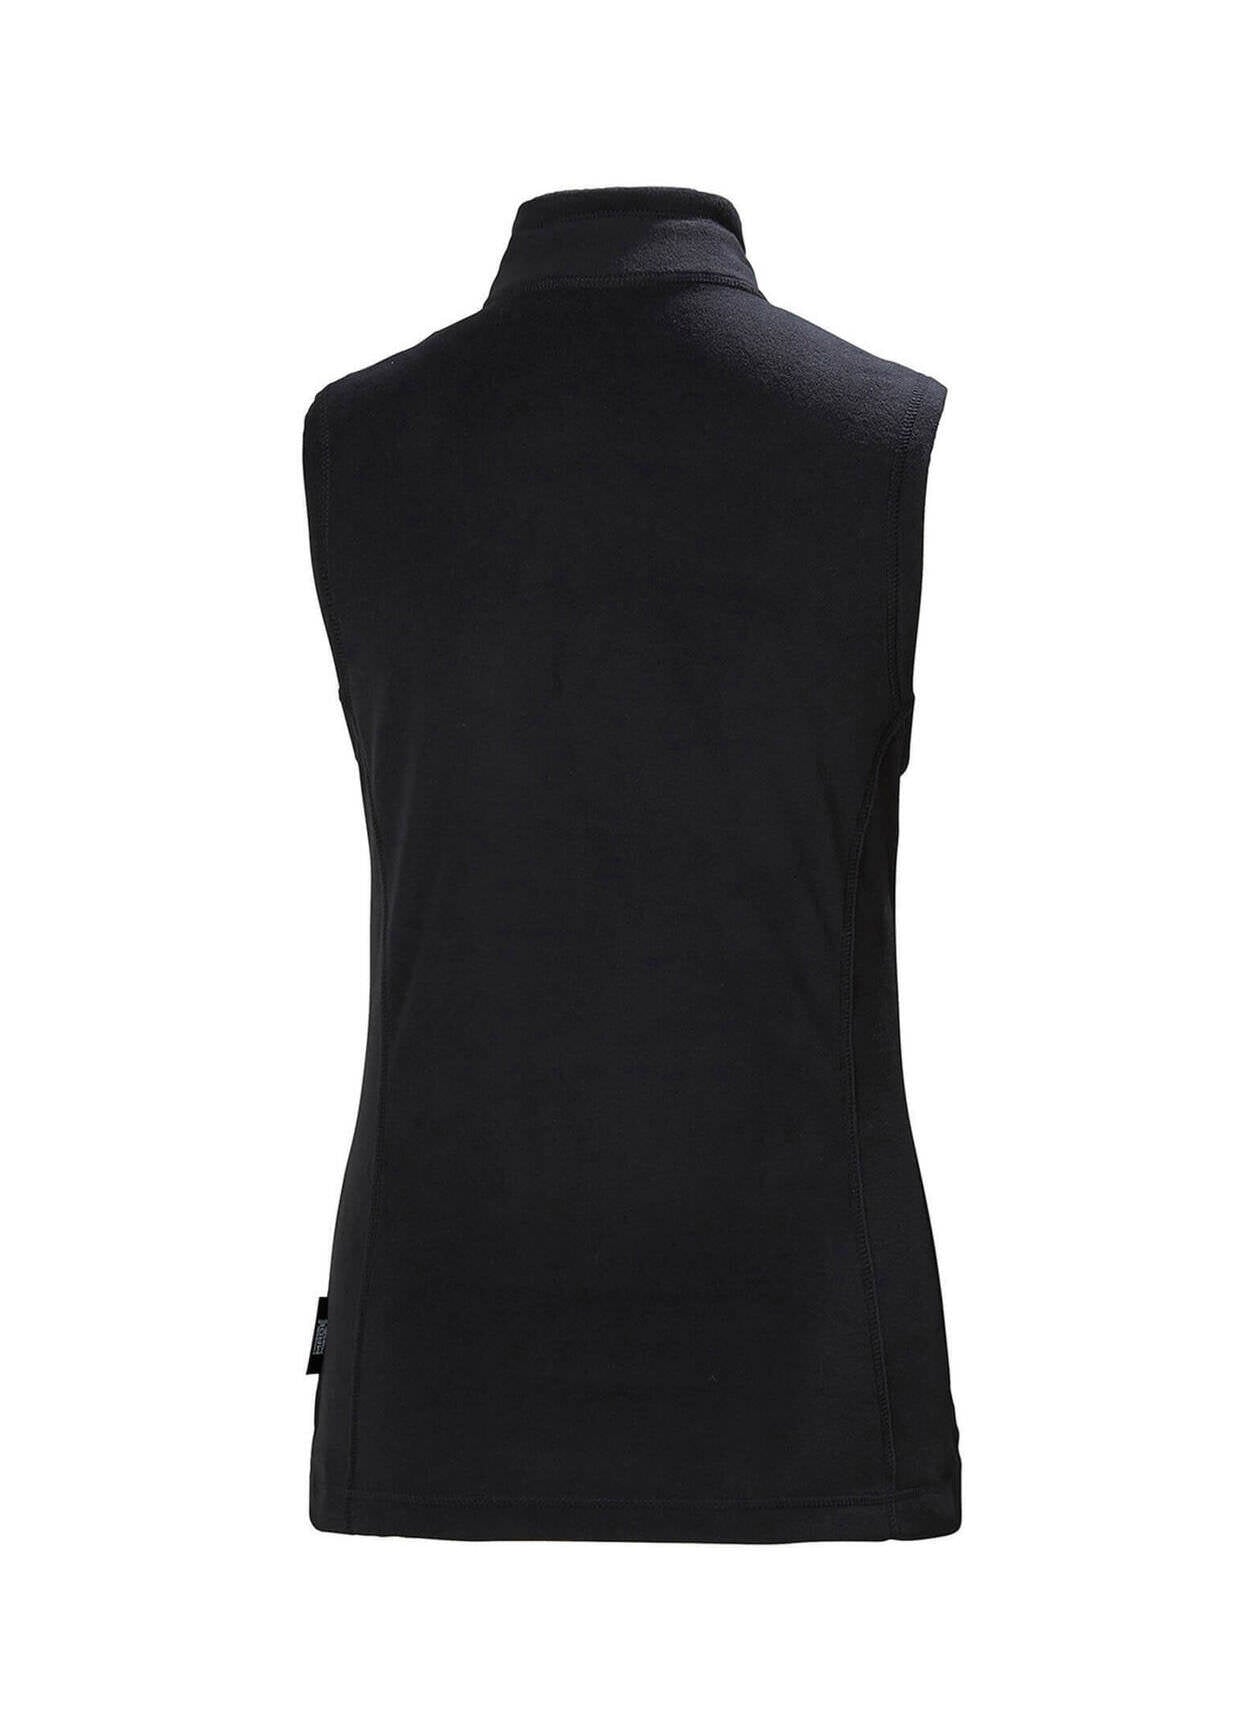 Helly Hansen Women's Daybreaker Vests, Black